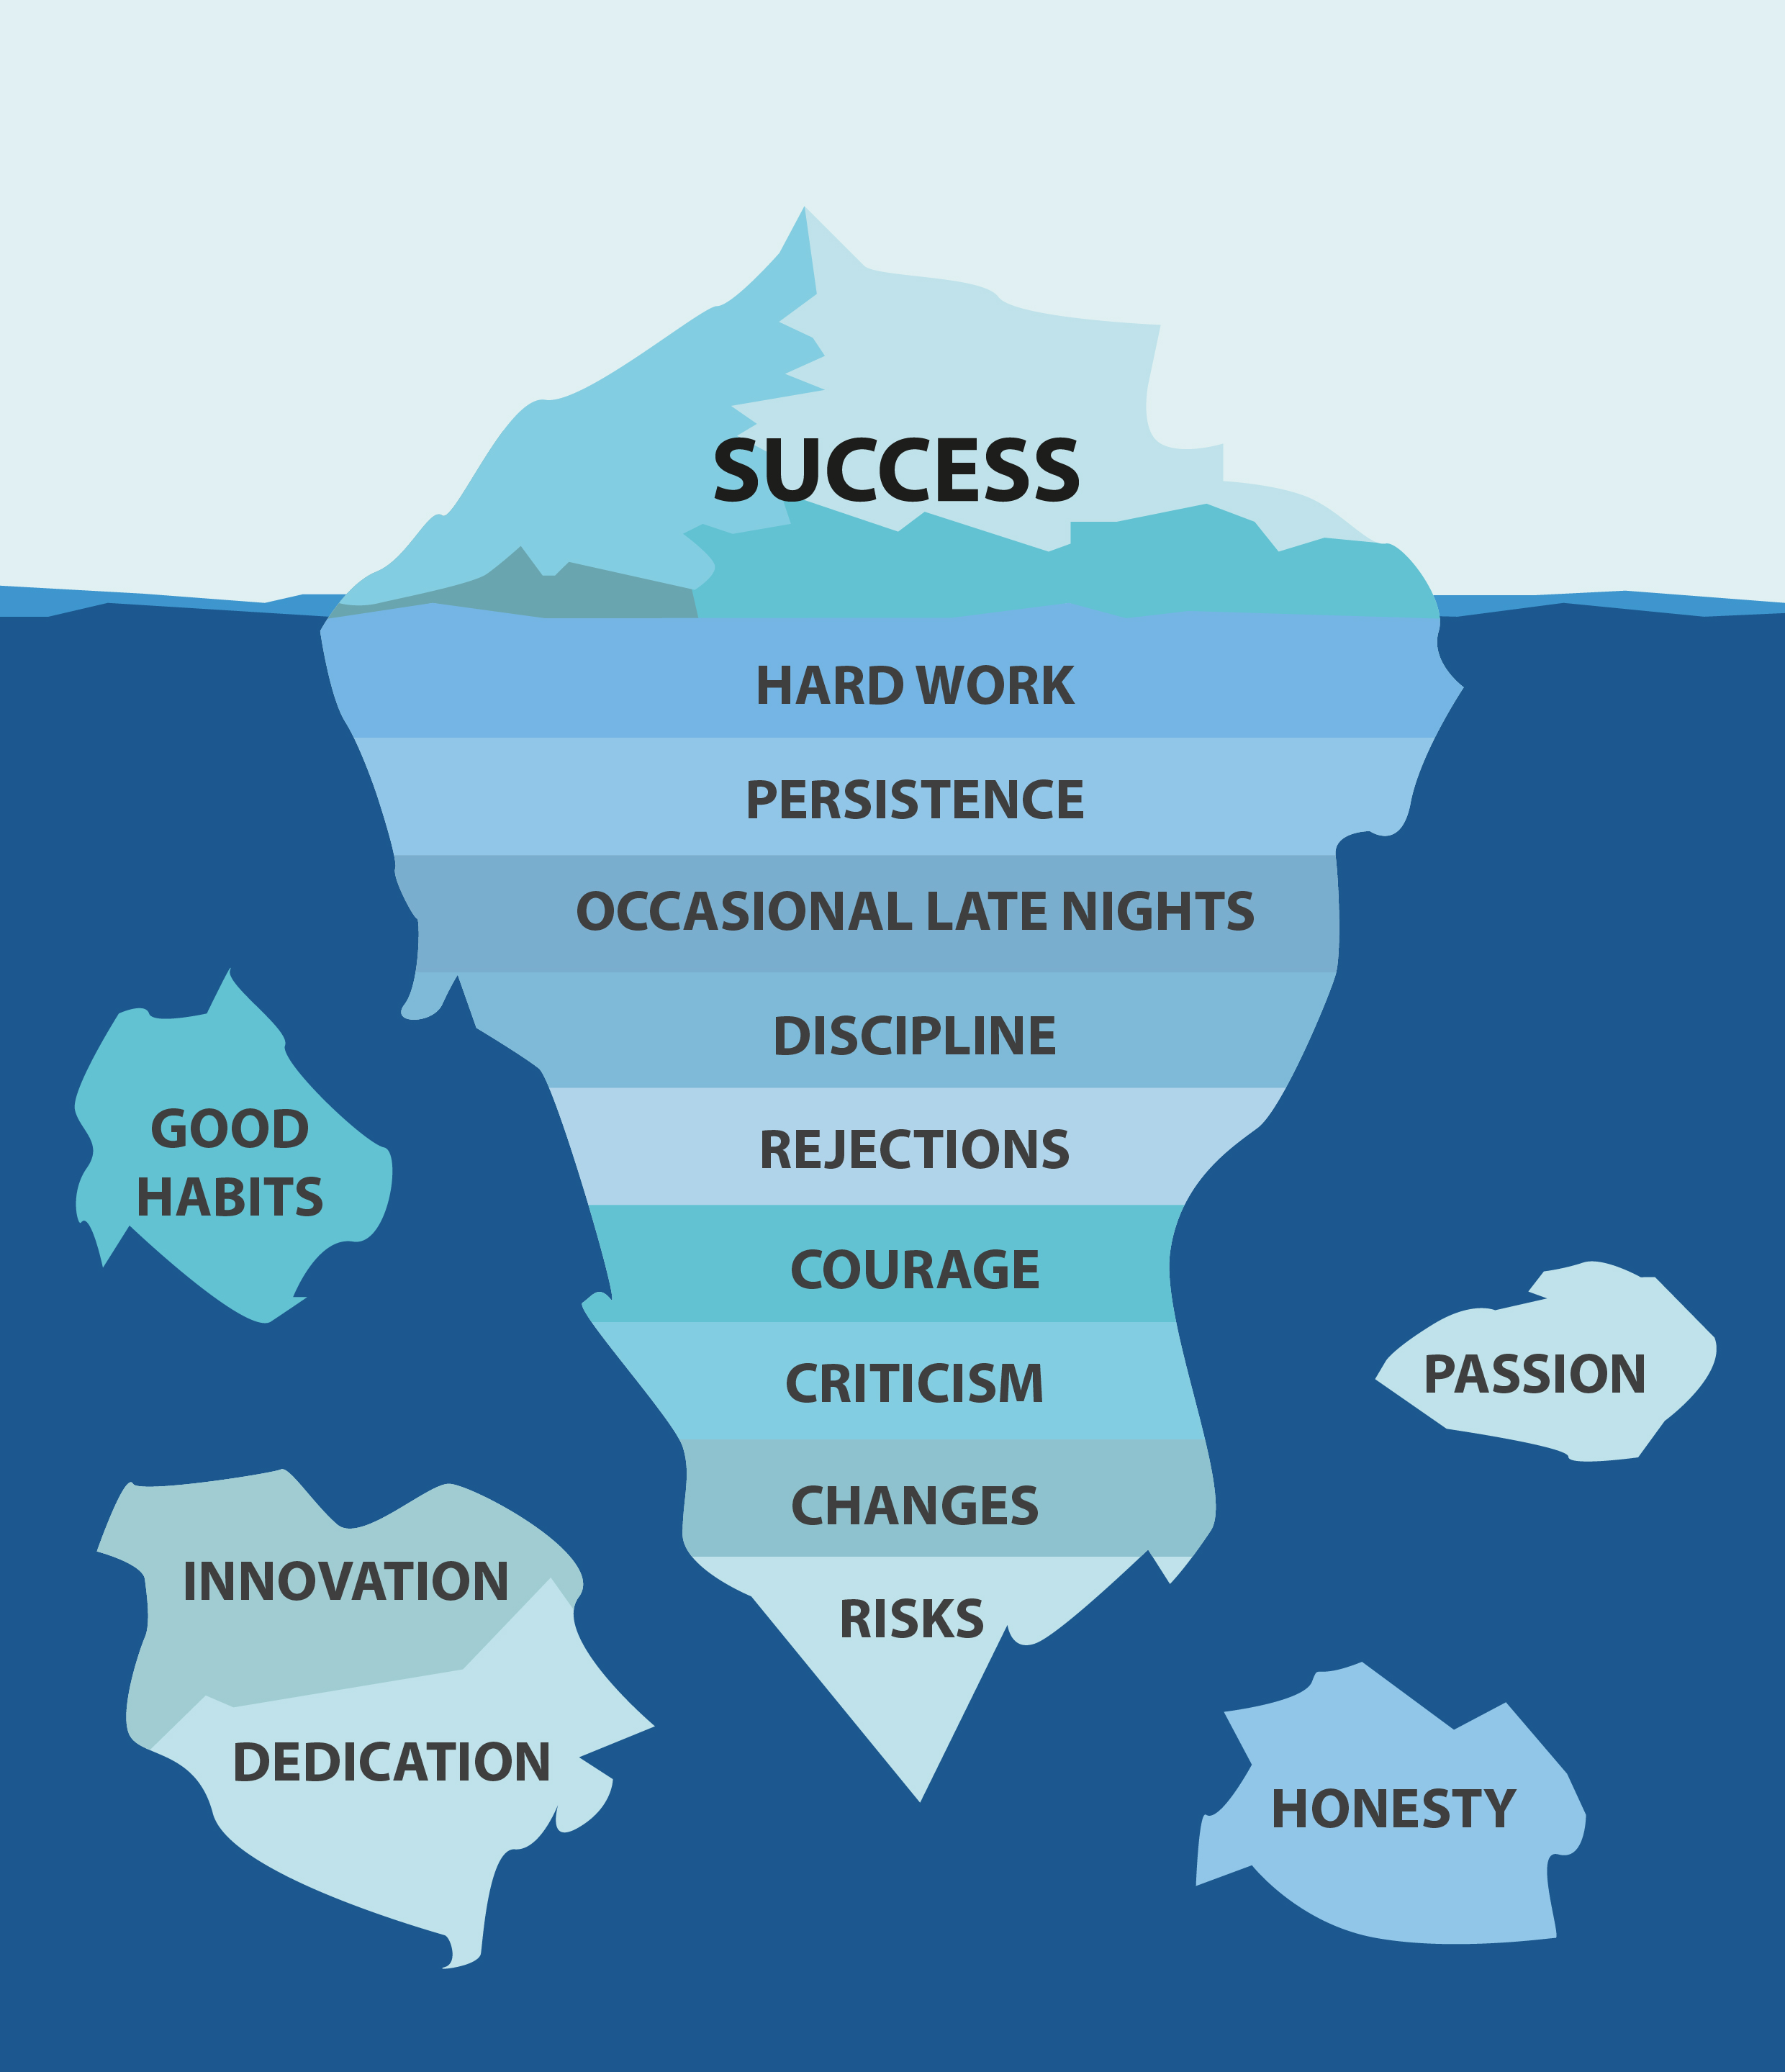 Success is just the tip of the iceberg - Scott PR | Scott PR